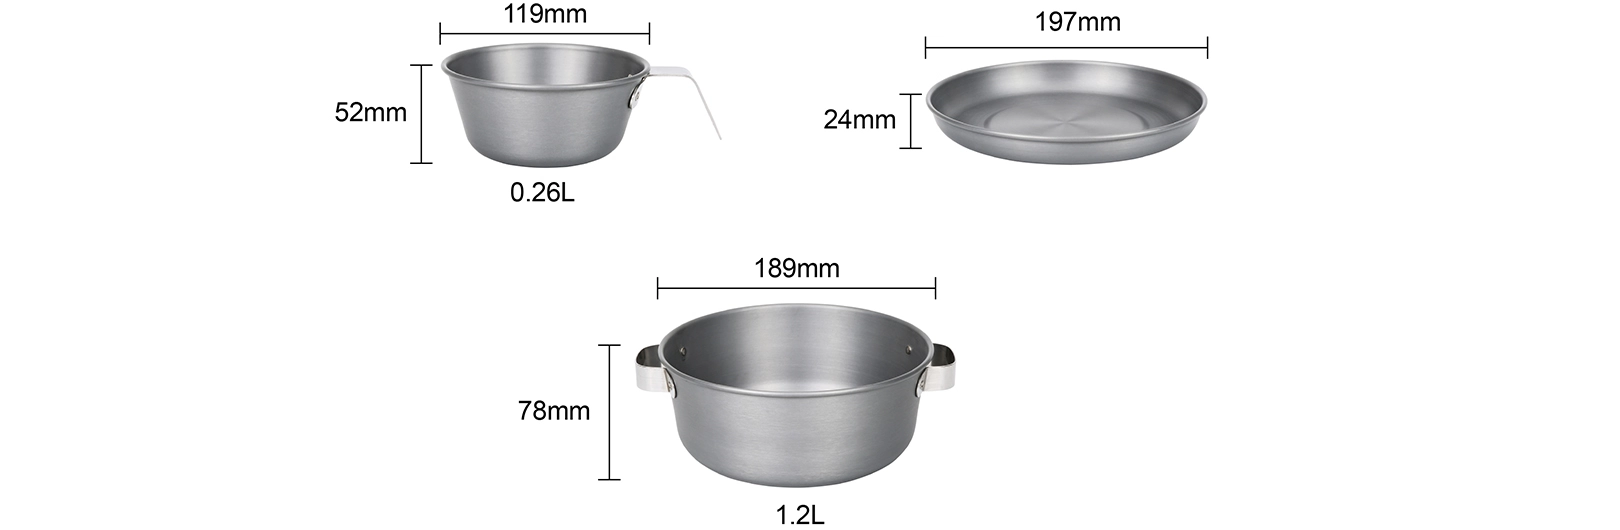 details of Portable lightweight Cookware Set